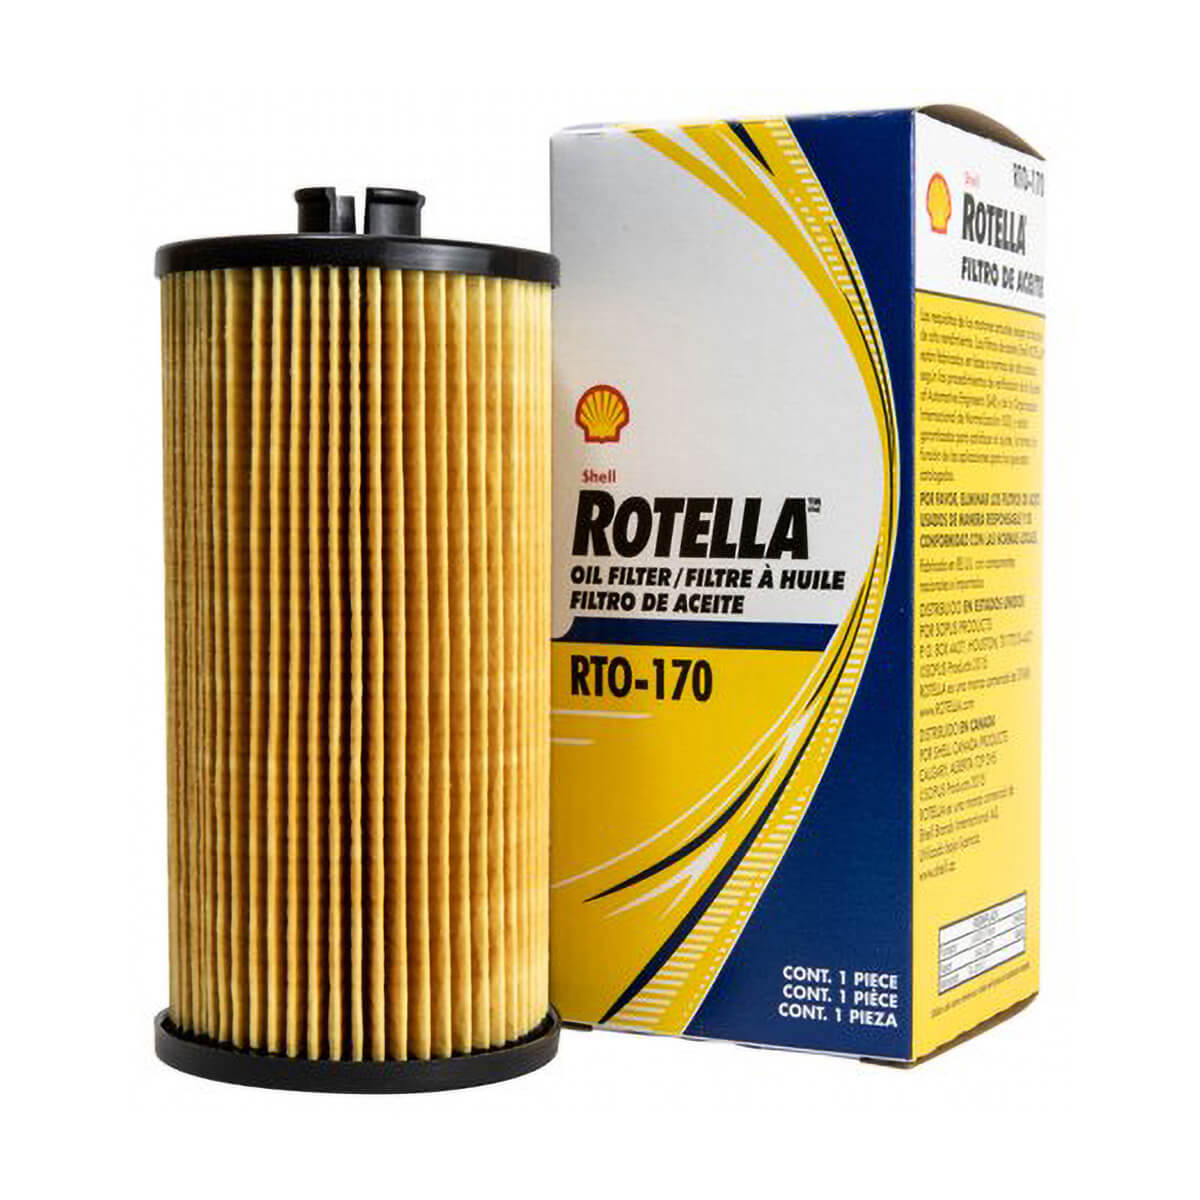 Shell Rotella RTO-170 Oil Filter